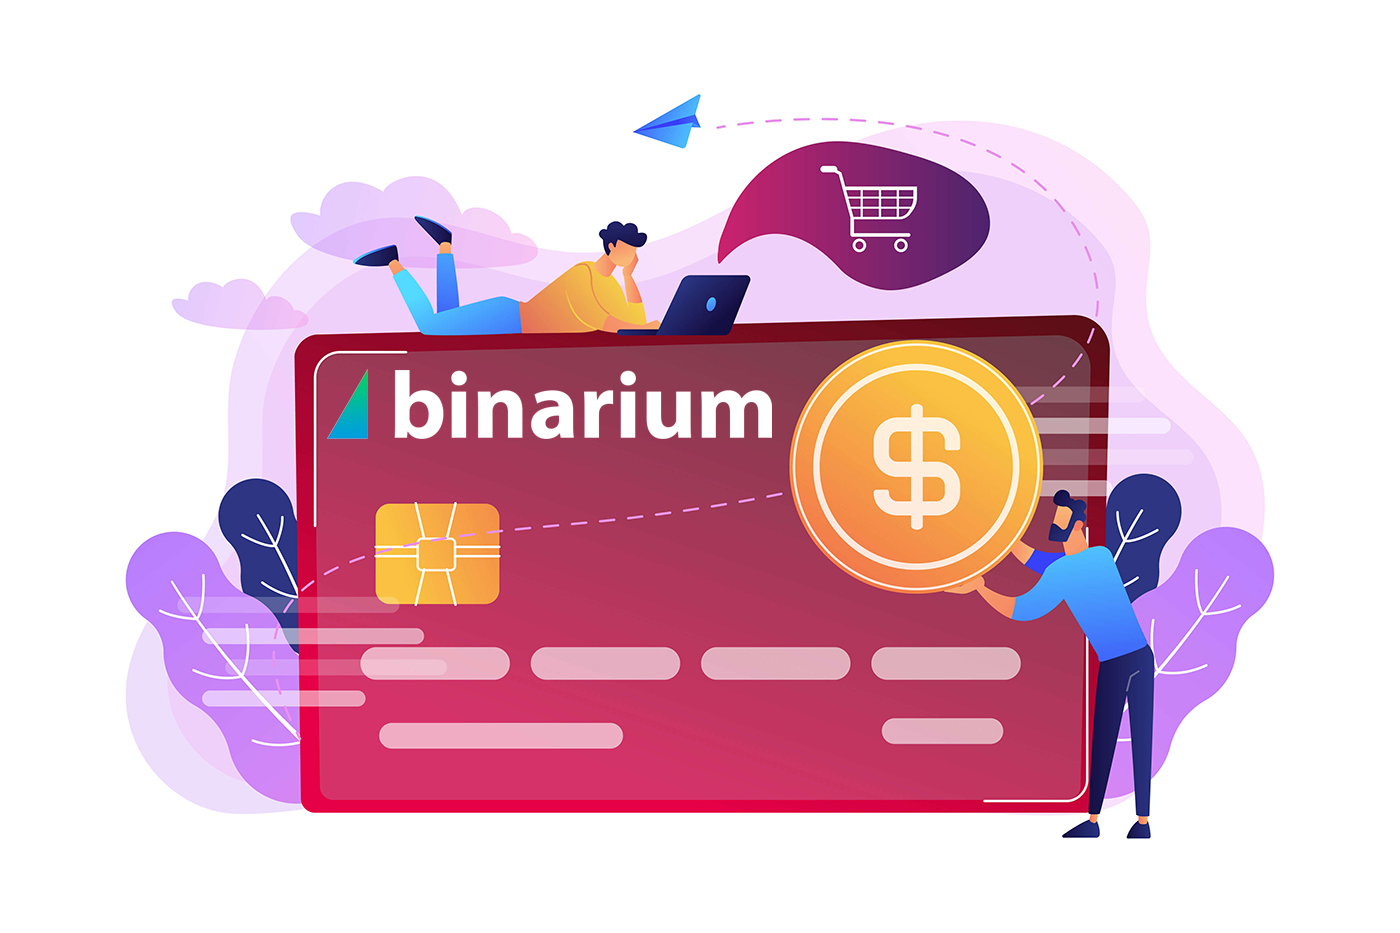  Binarium में पैसे कैसे जमा करें